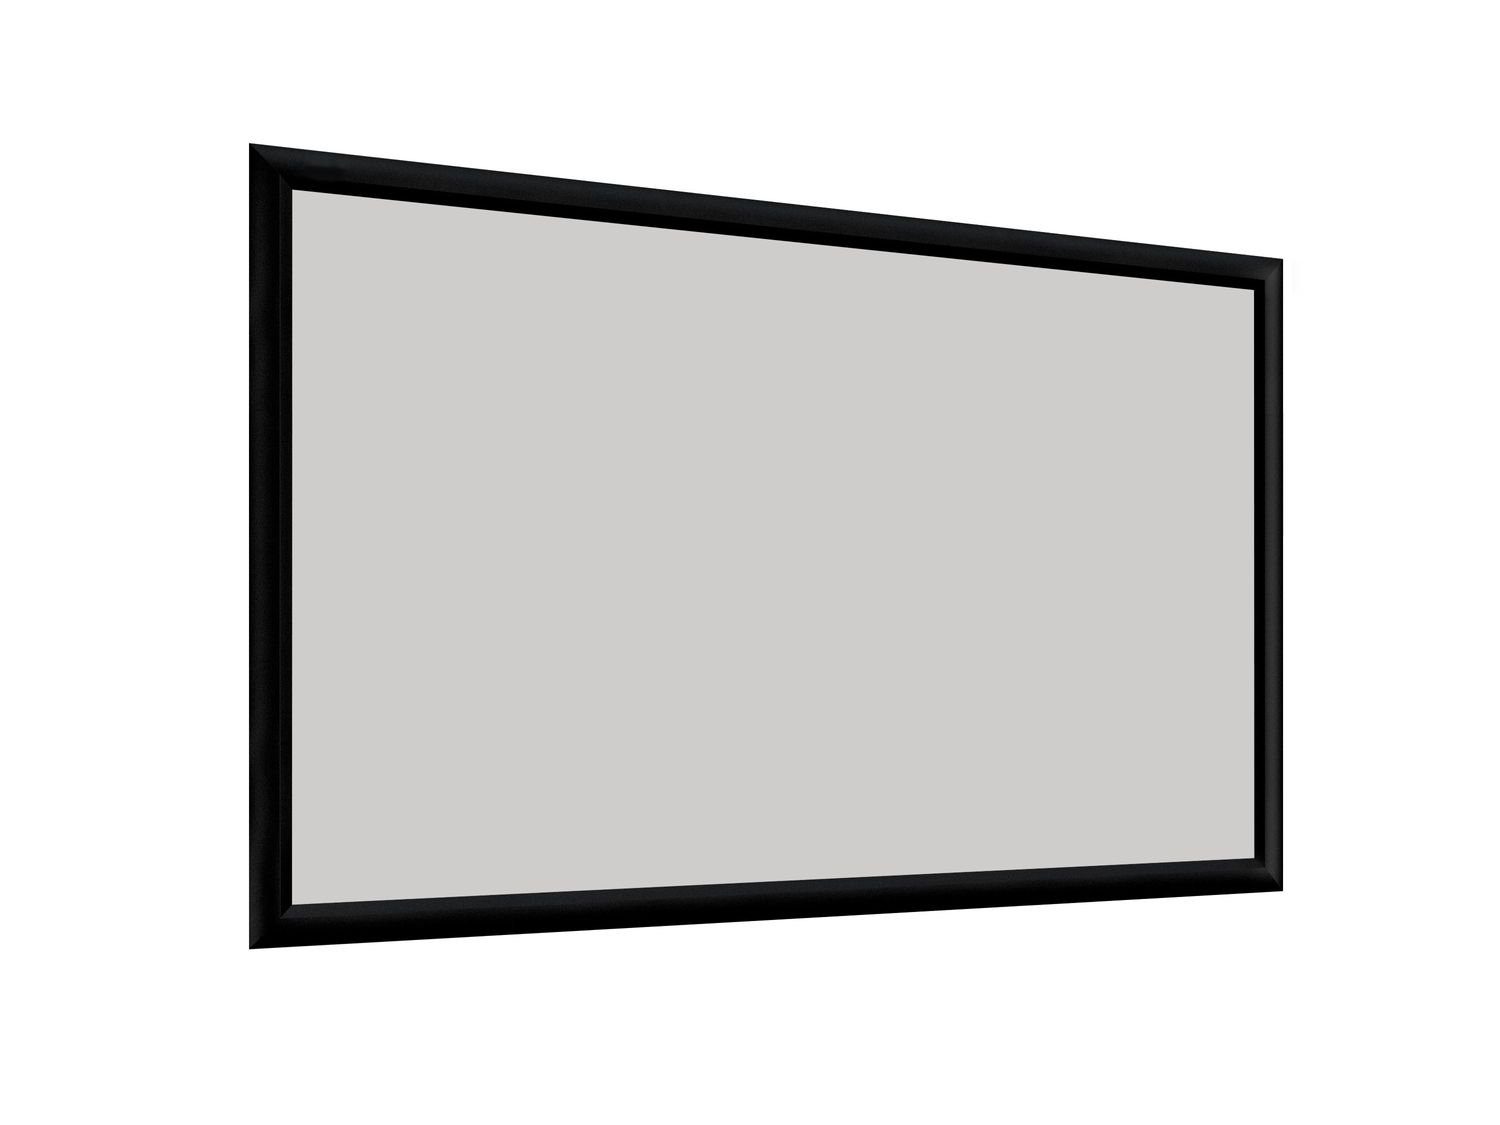 Deluxx Cinema - Dayvision ALR Rahmenleinwand (244 x 137cm, 16:9, Gain 1)